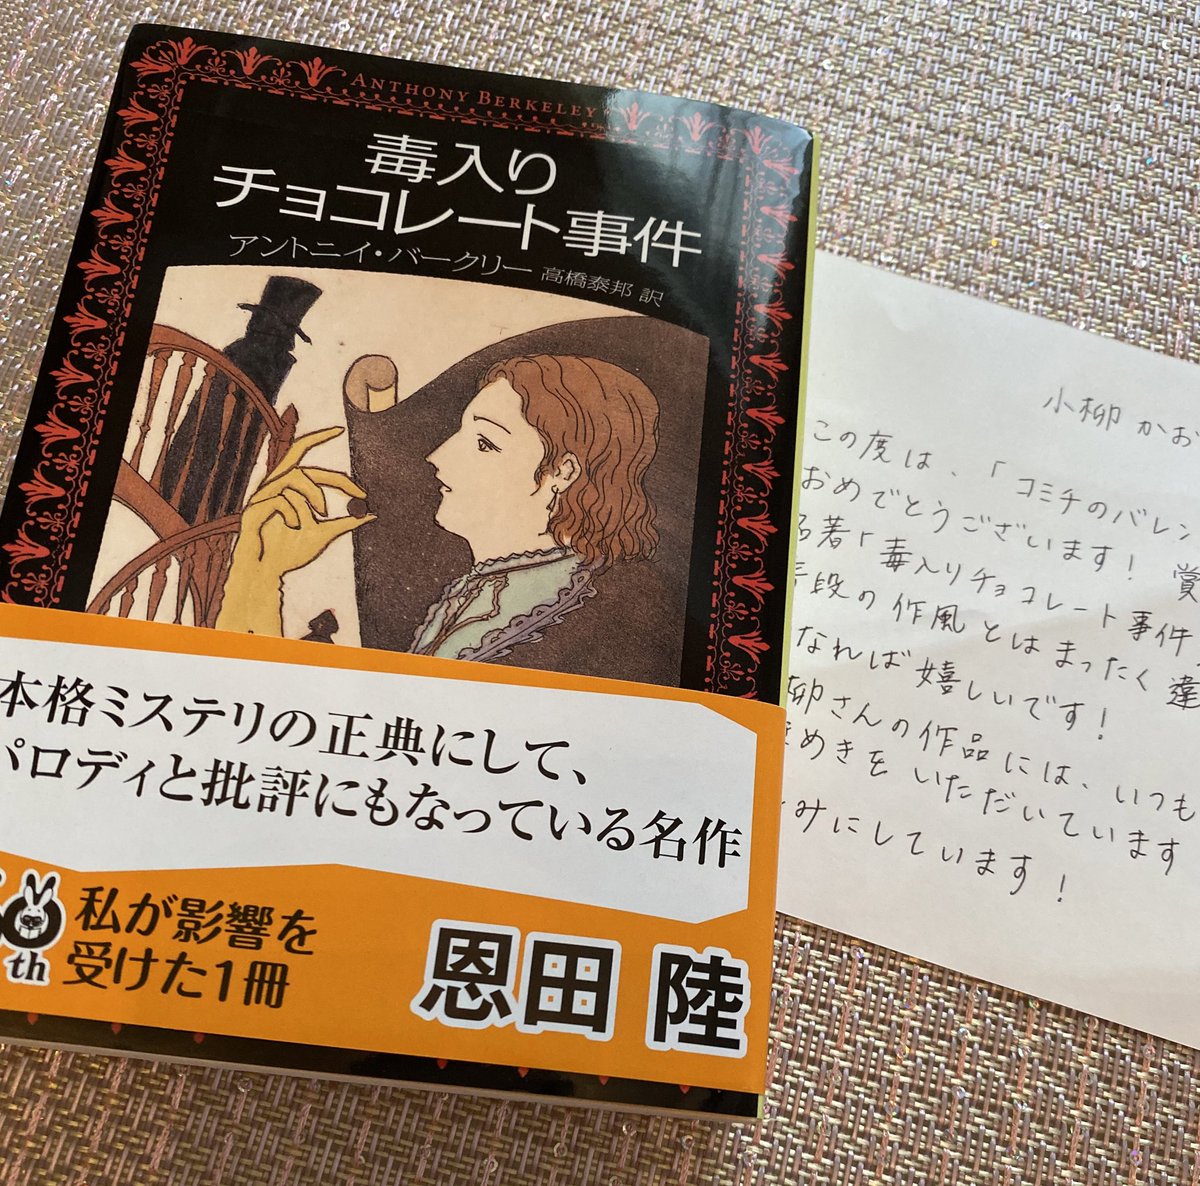 #コミチのバレンタイン の受賞賞品として「毒入りチョコレート事件」という小説を頂きました…!自分ではセレクトしないので新鮮✨
これもコミチさん@comici_jp の愛だということが添えられたお手紙で伝わってきました。ありがとうございます?

受賞作品はこちらです?‍♀️
https://t.co/QIKAsQbZY1 